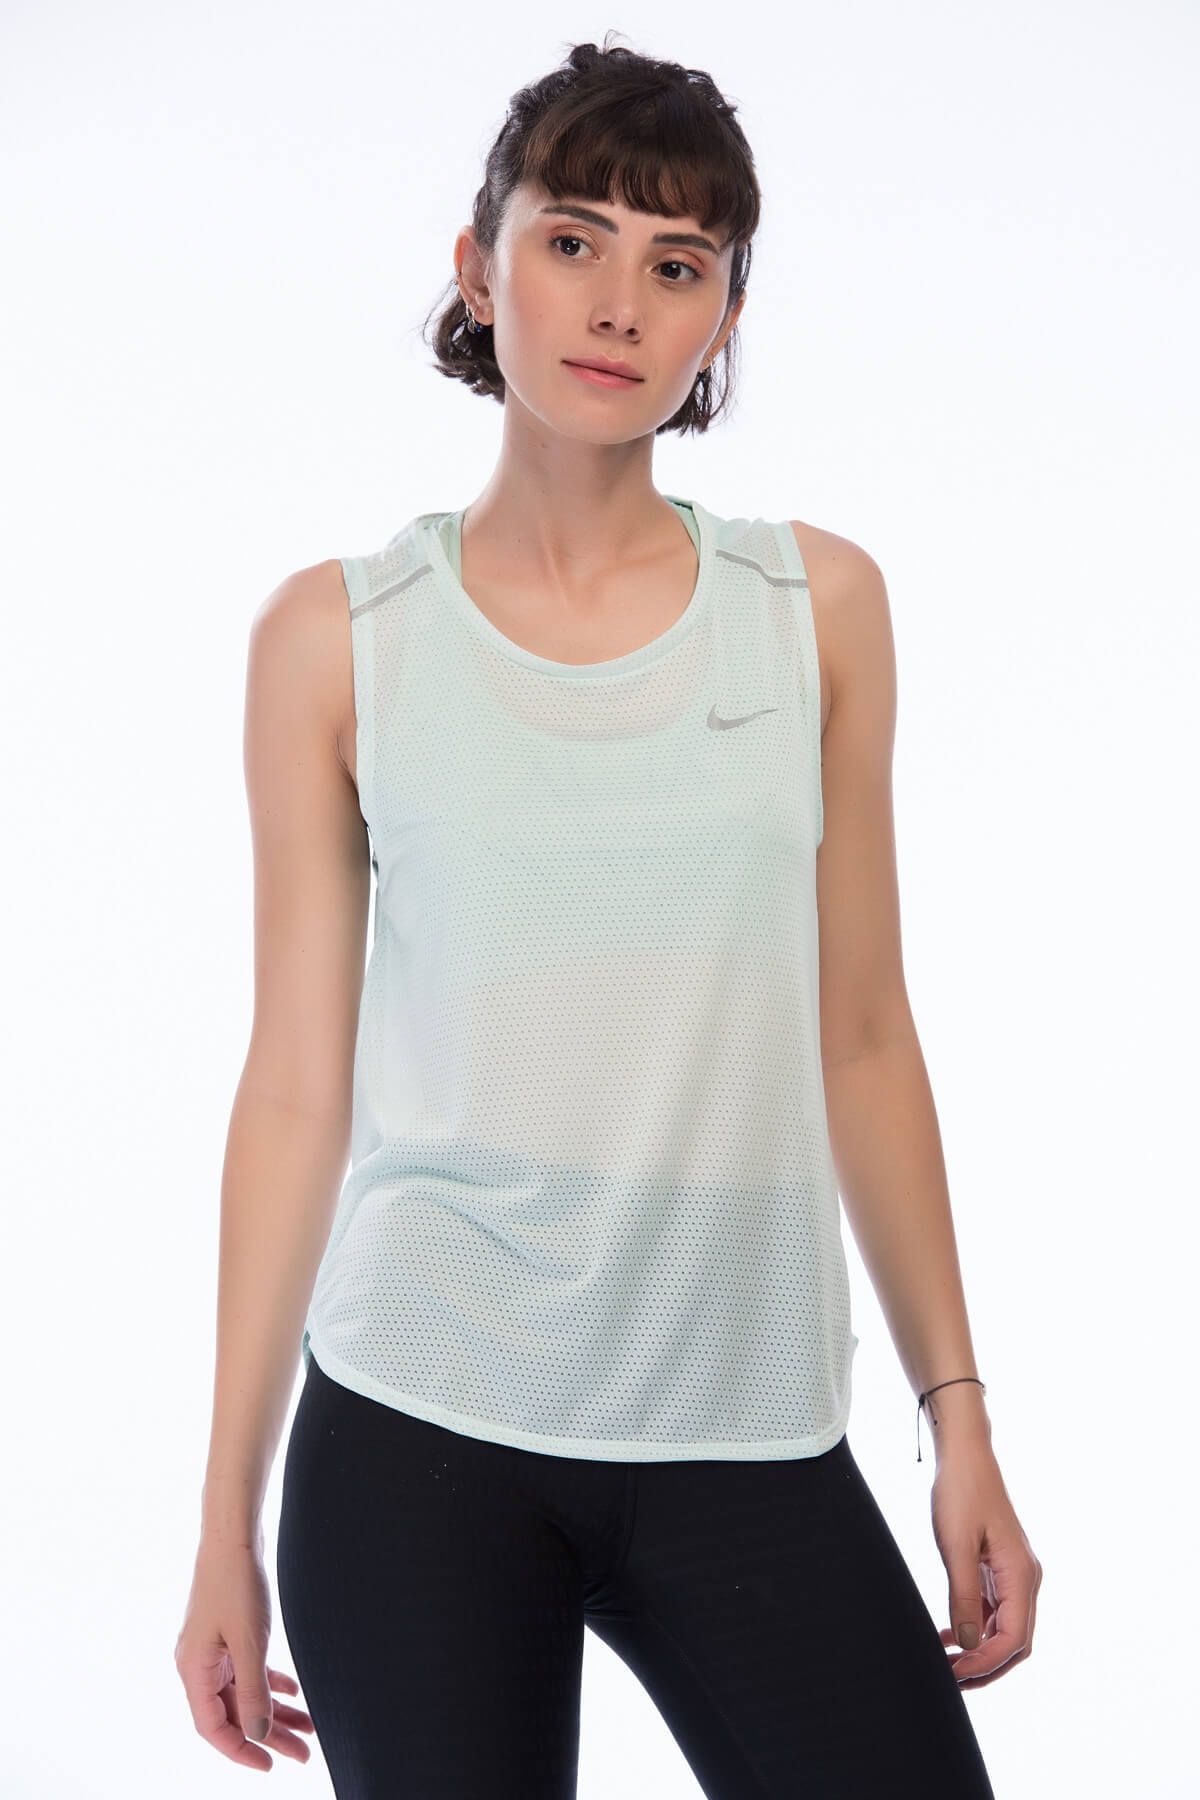 Nike Kadın Atlet - W Nk Brthe Tank - 885239-357